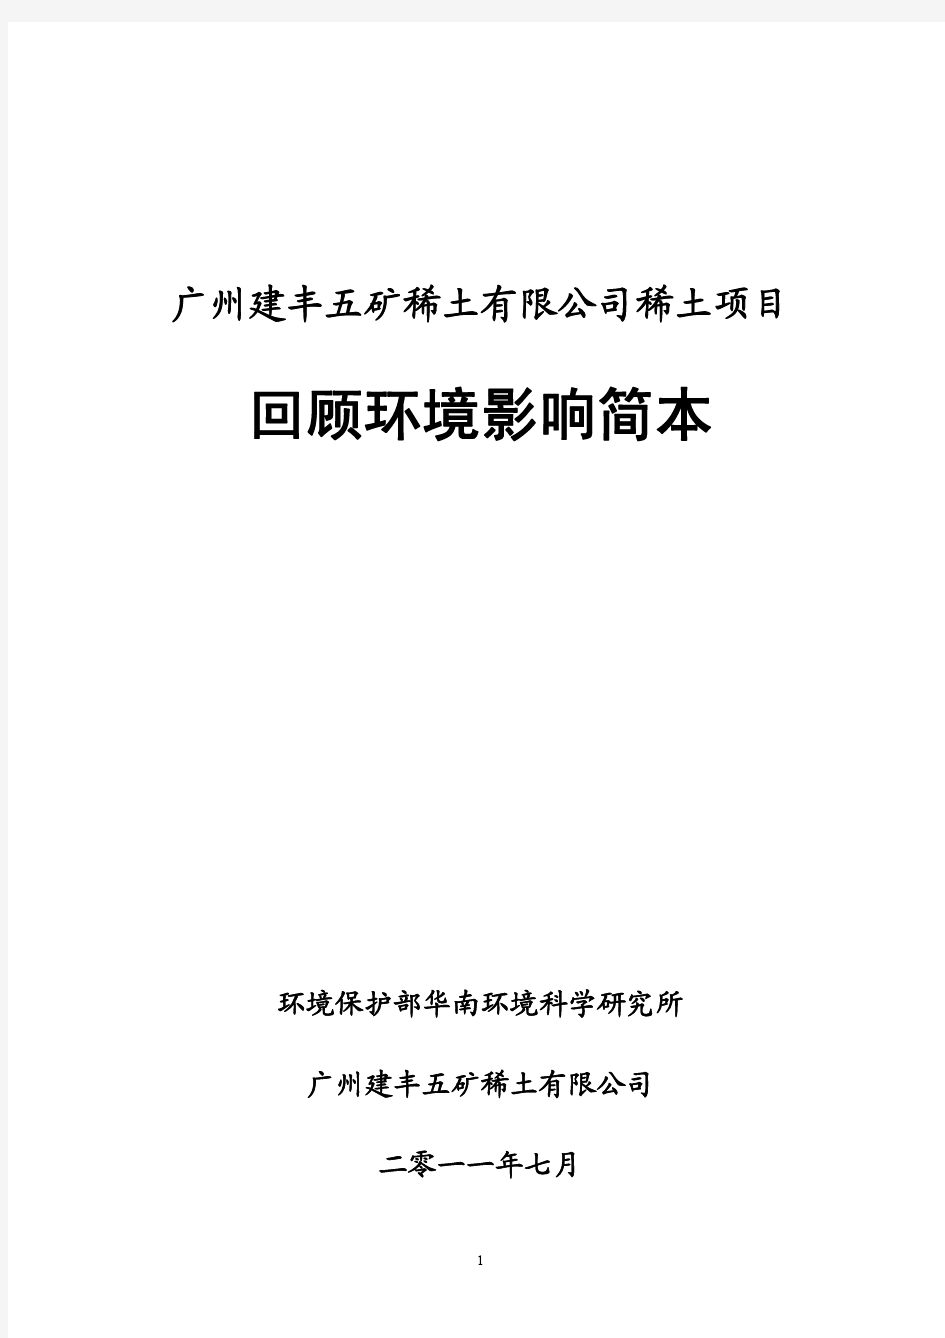 回顾环境影响评价简本-环境保护部华南环境科学研究所